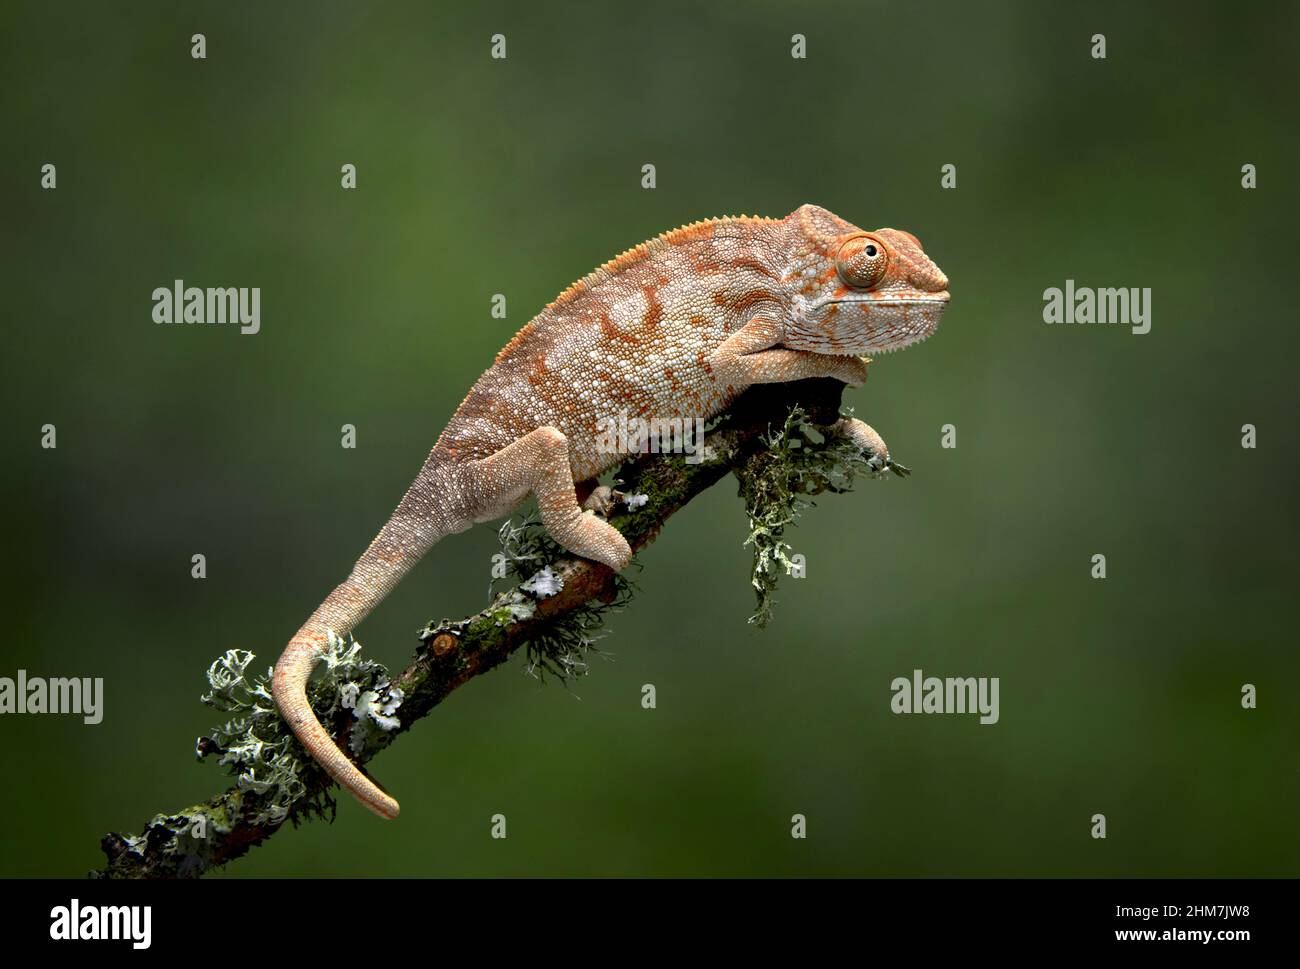 Un retrato de perfil de un camaleón, Chamaeleonidae, ya que se balancea en una rama utilizando su cola como ancla, hay un fondo verde Foto de stock